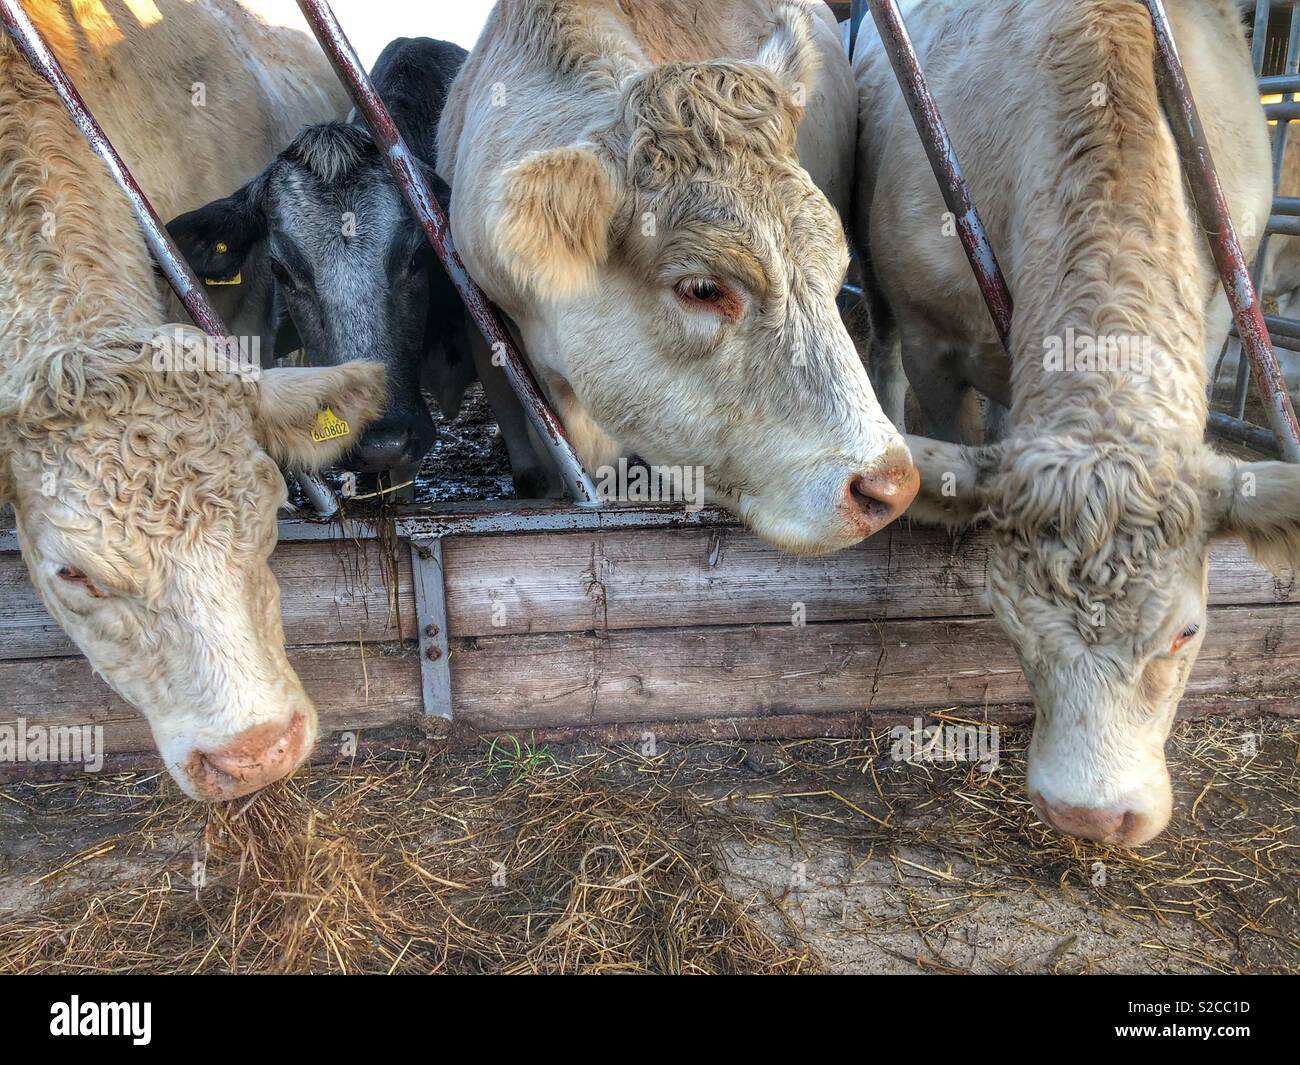 Cows, feeding time Stock Photo